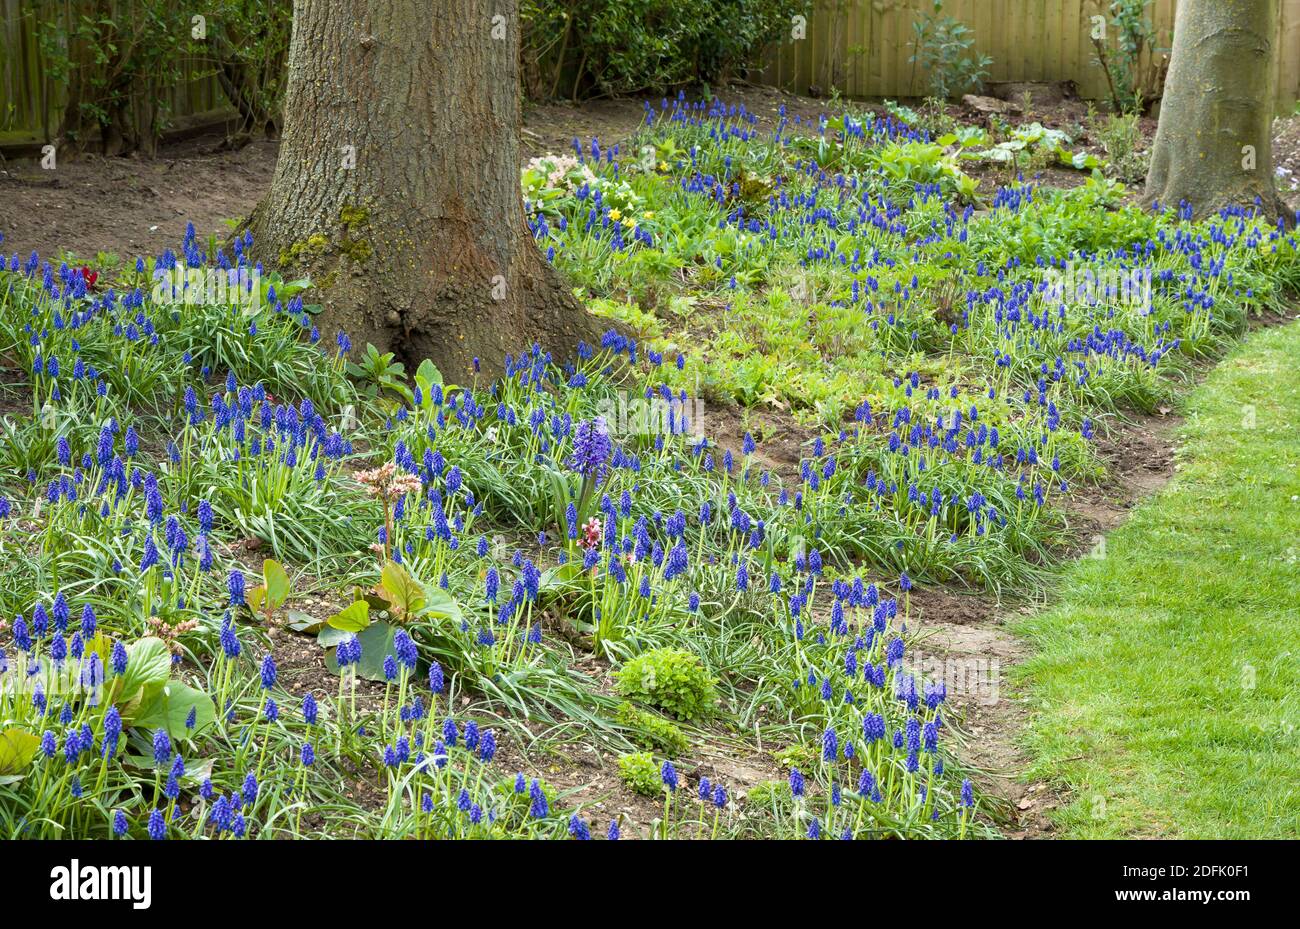 Jardin boisé avec muscari armeniacum, beaucoup de raisins bleus jacinthes en fleur, Royaume-Uni Banque D'Images